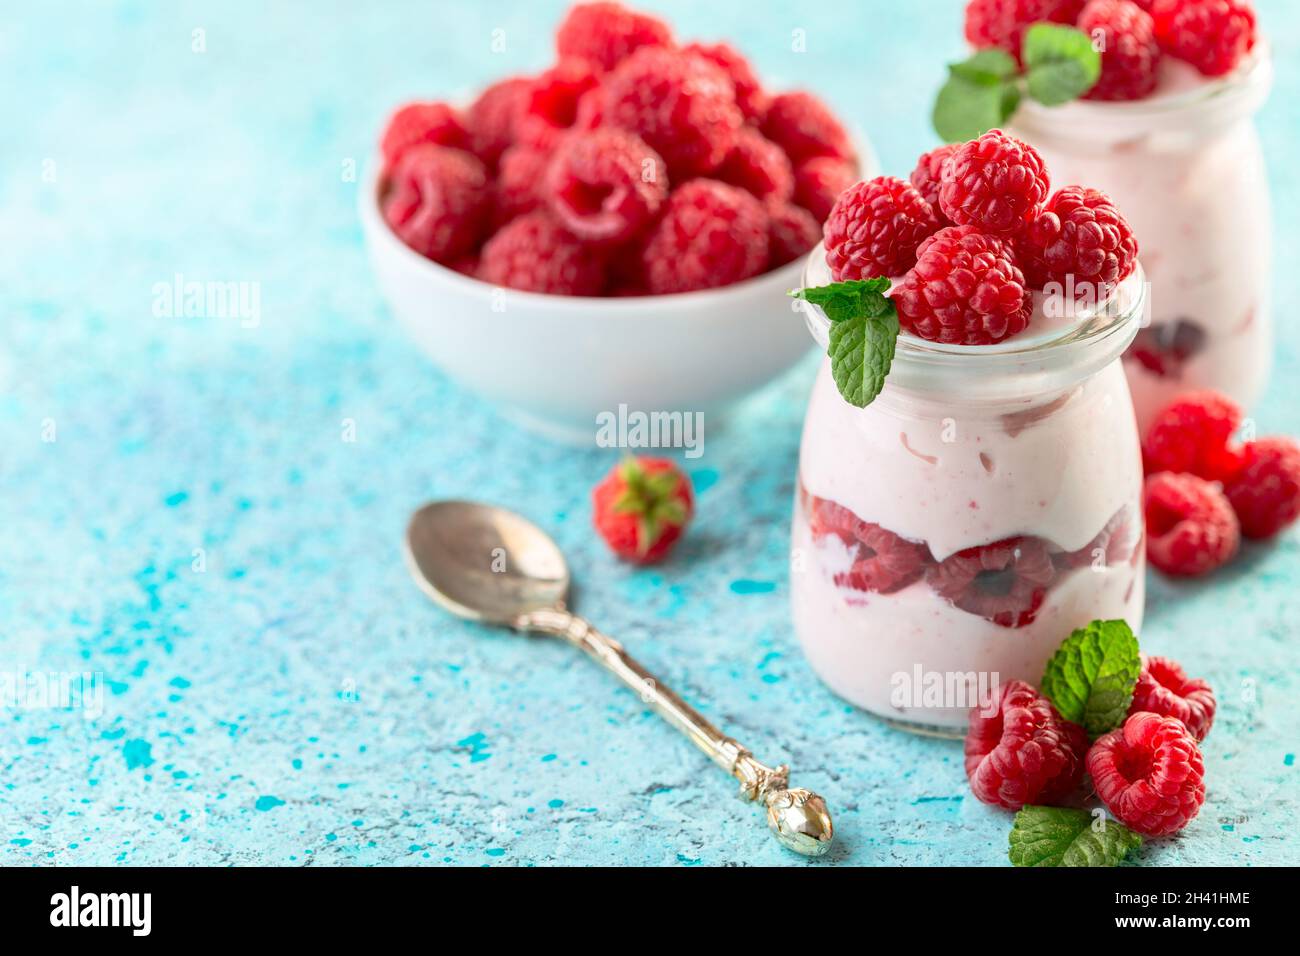 Delicioso yogur de bayas con frambuesas frescas. Foto de stock